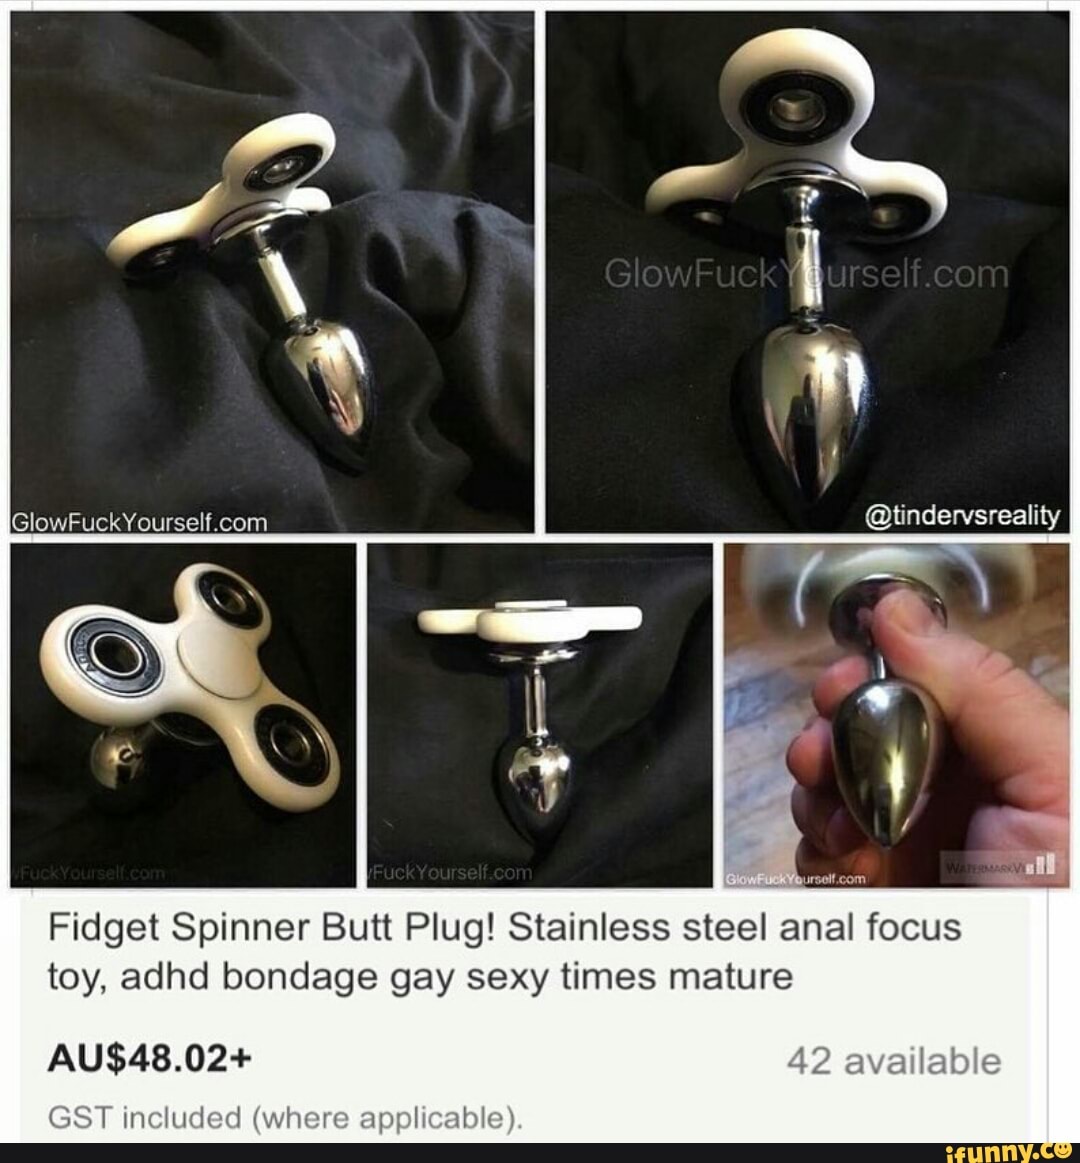 Fidget spinner anal